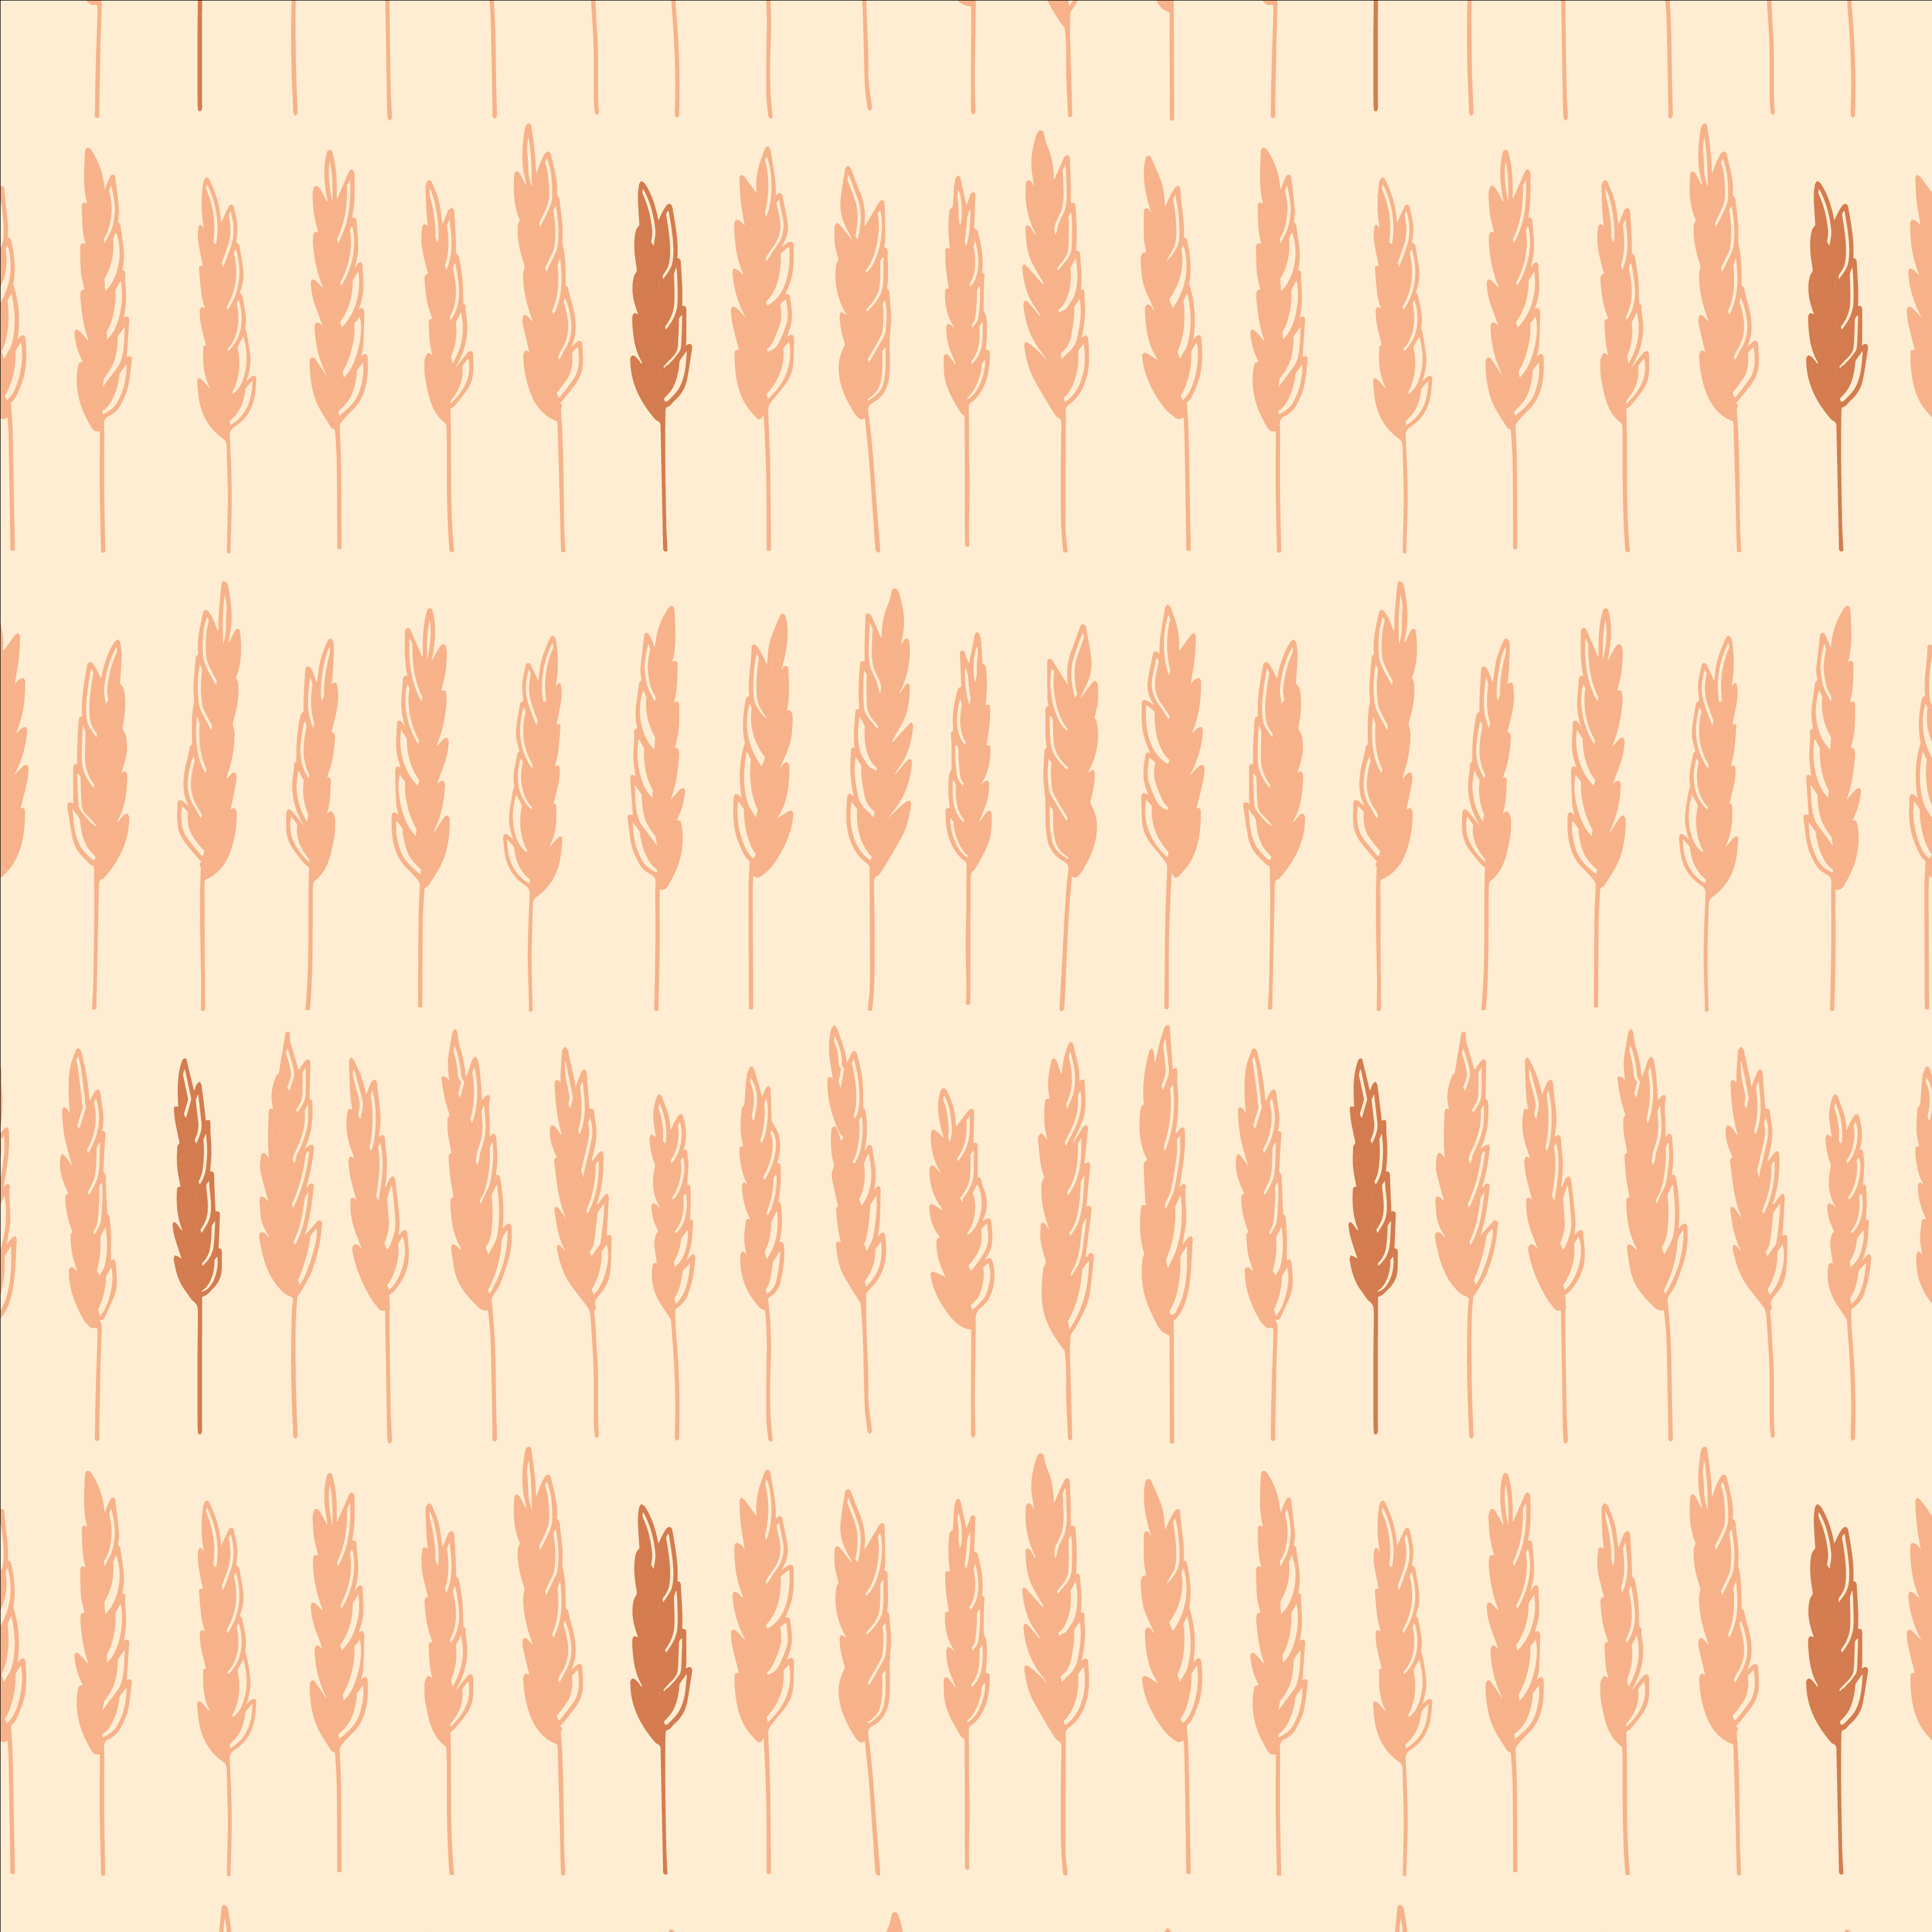 Wheat fields pattern